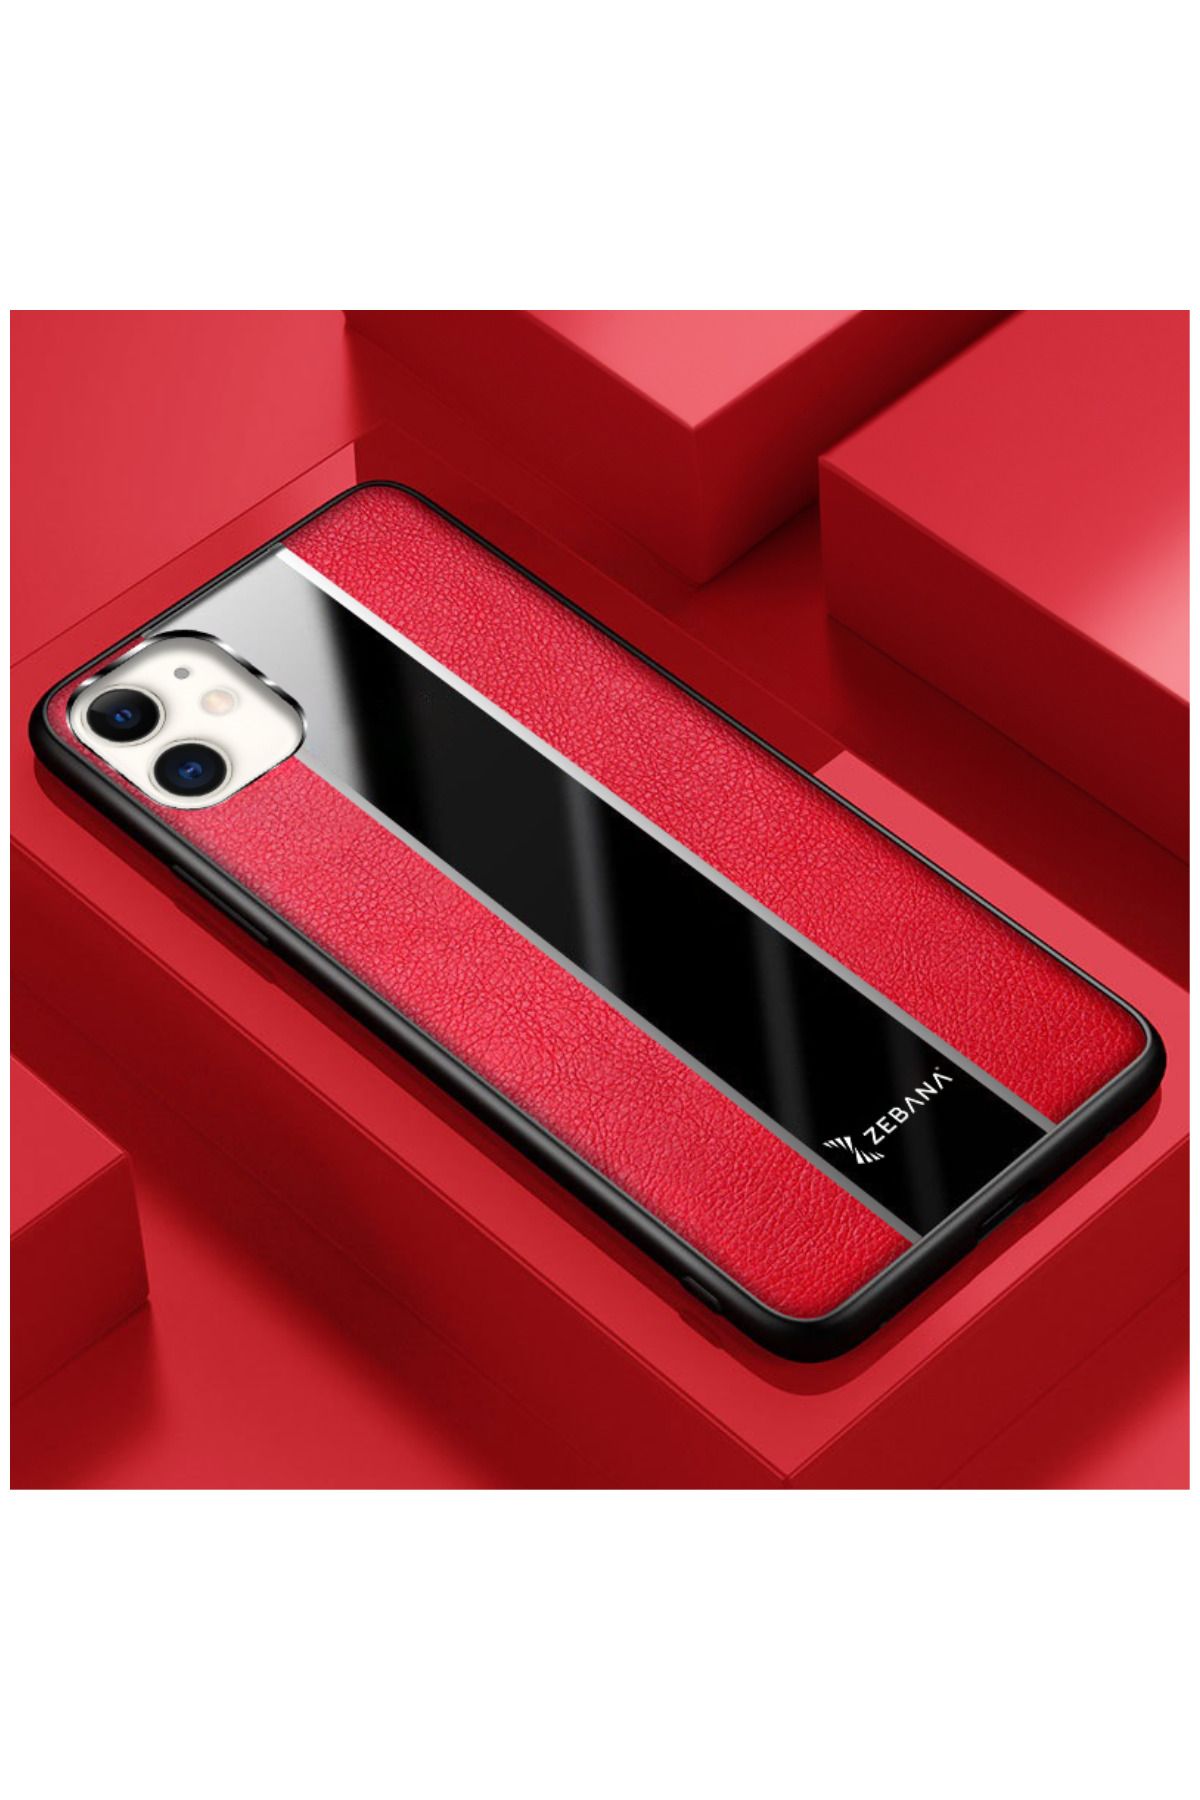 Dara Aksesuar Apple Iphone 11 Uyumlu Kılıf Zebana Premium Deri Kılıf Kırmızı